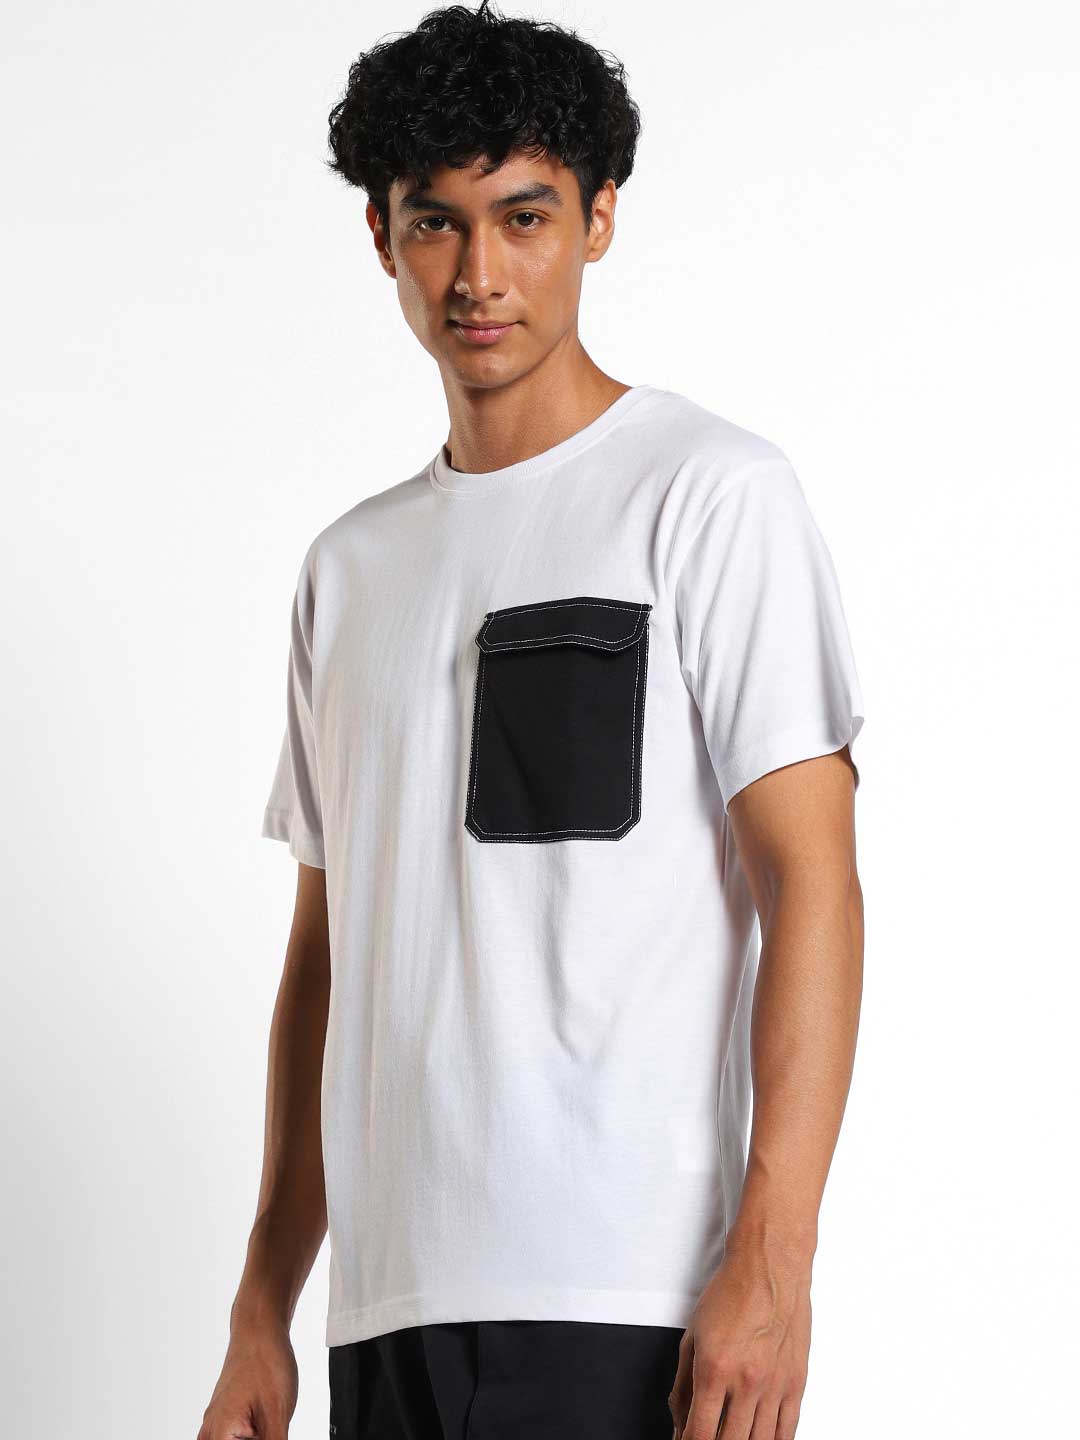 XL ennoy POCKET T-SHIRTS WHITE BLACK-